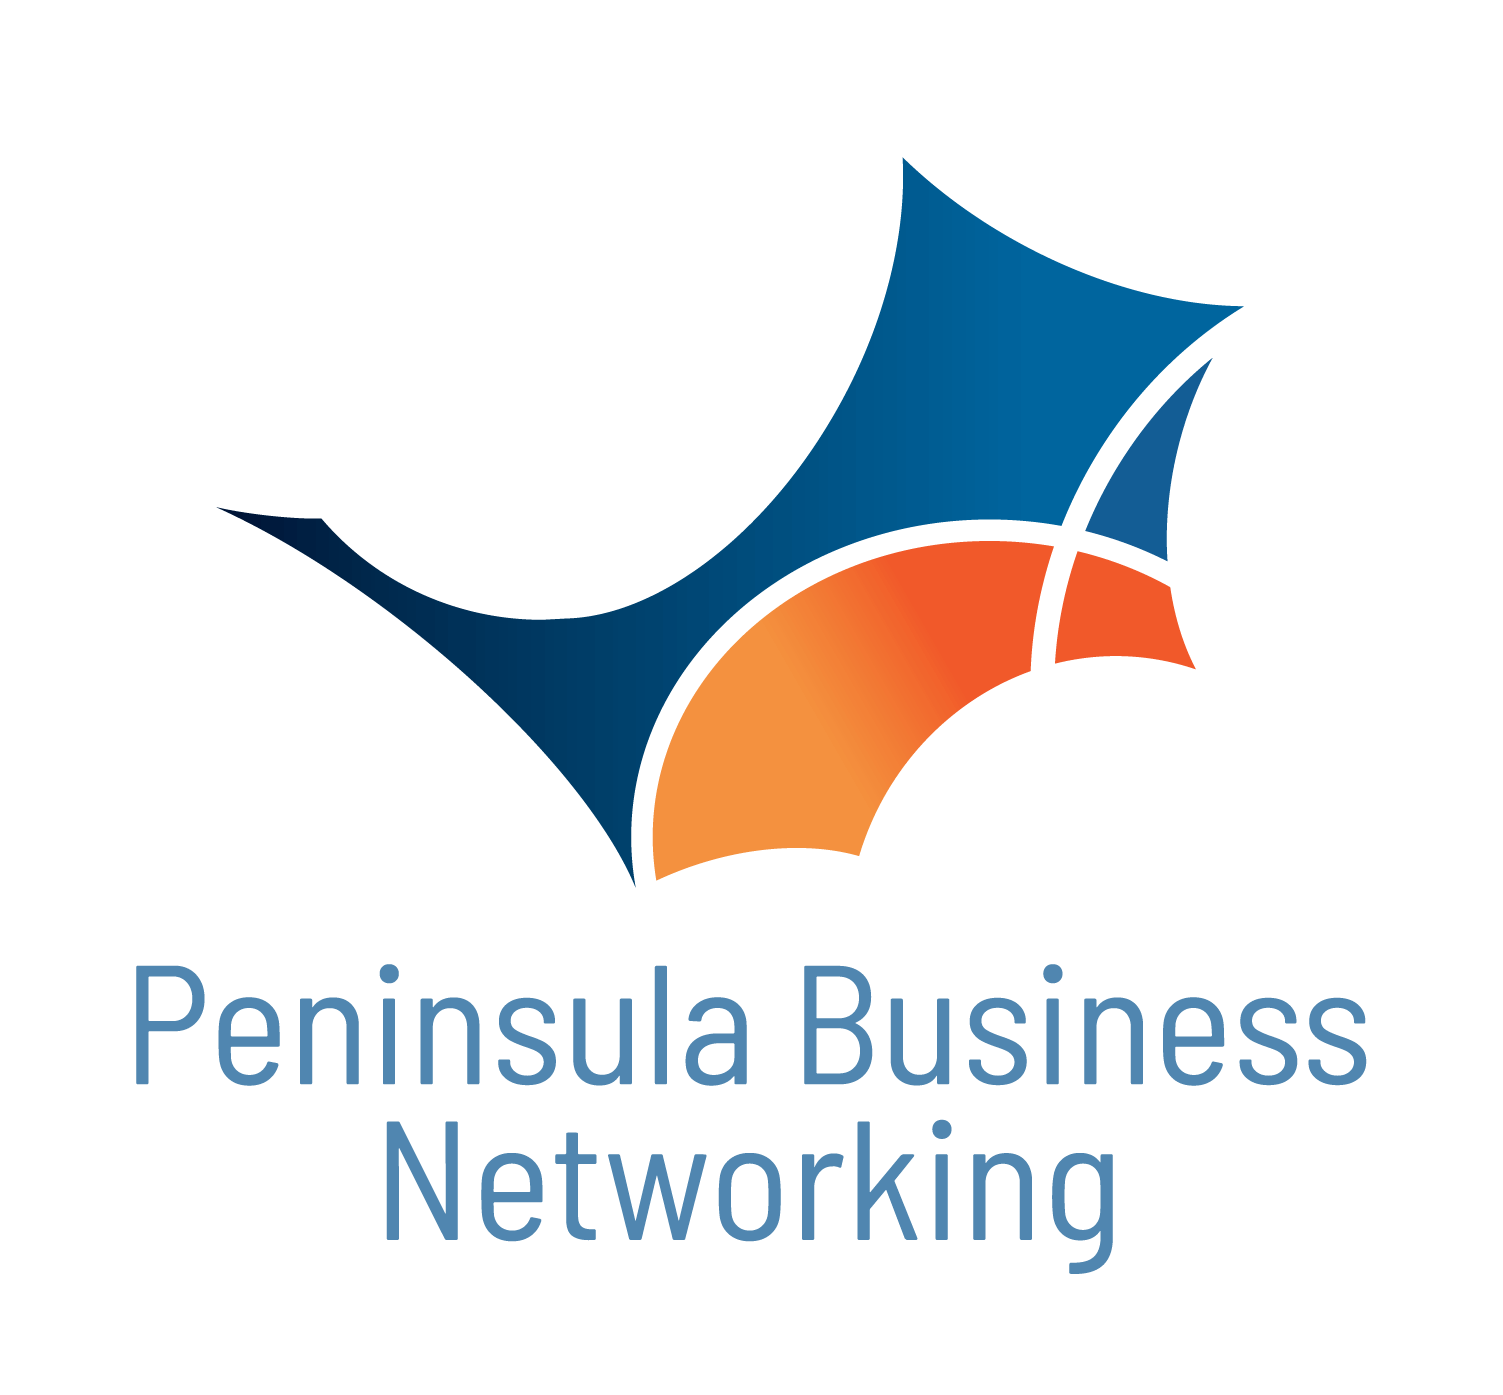 Peninsula Business Networking